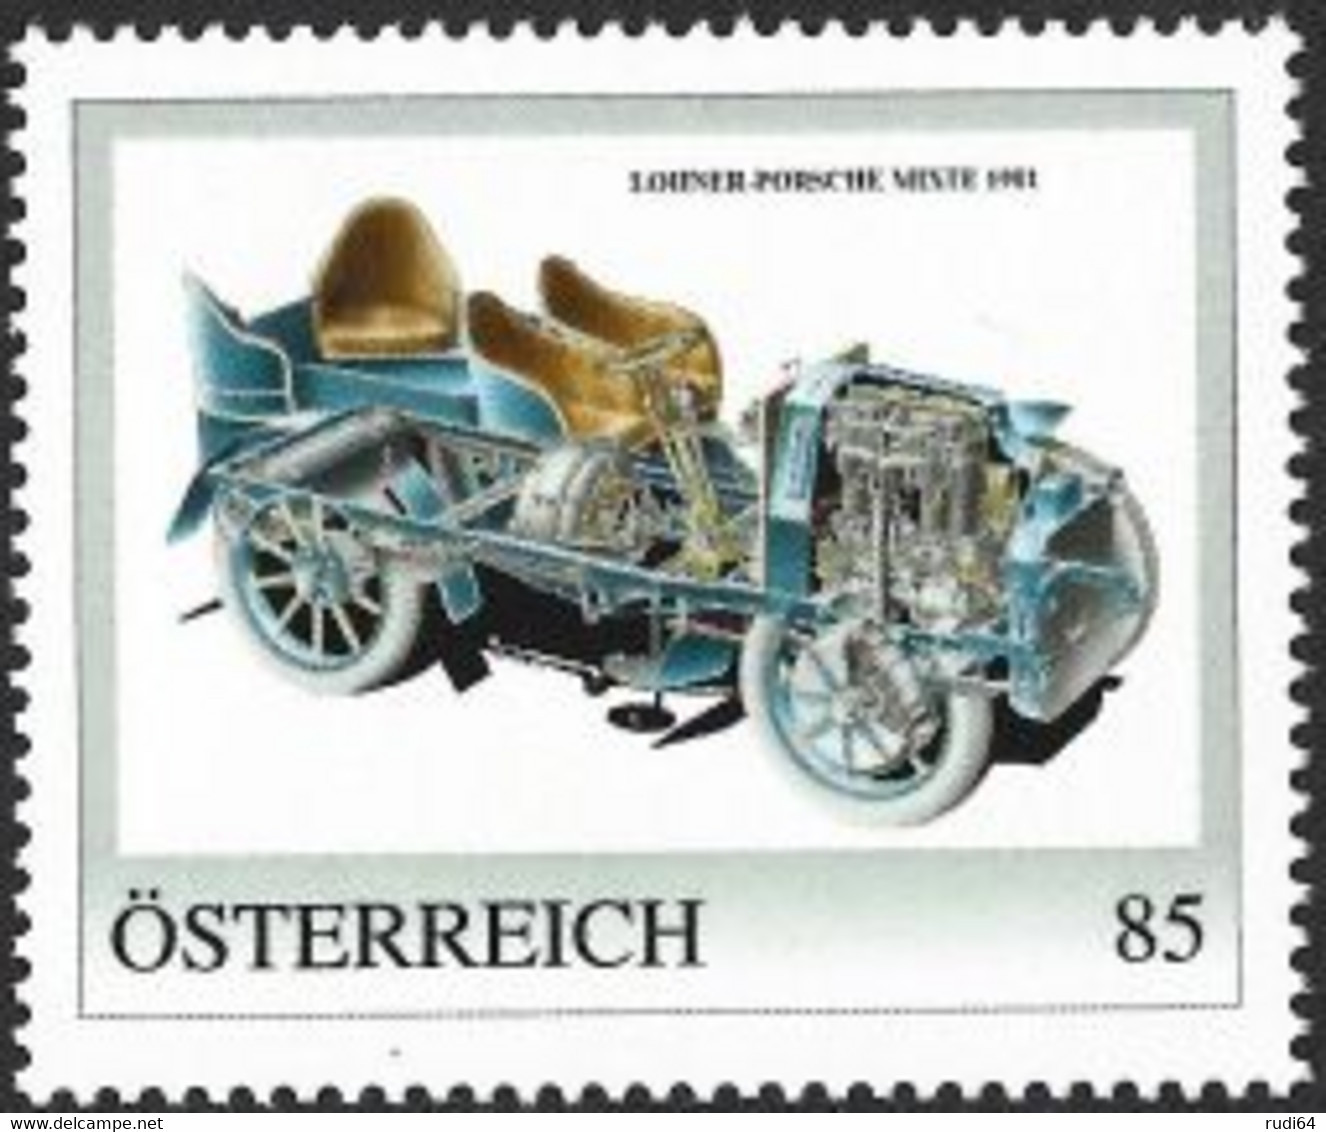 2022 Lohner-Porsche Mixte 1901, Personalisierte Briefmarke 2022, Konstruktion Von Ferdinand Porsche, 85 Cent, Automobile - Unused Stamps